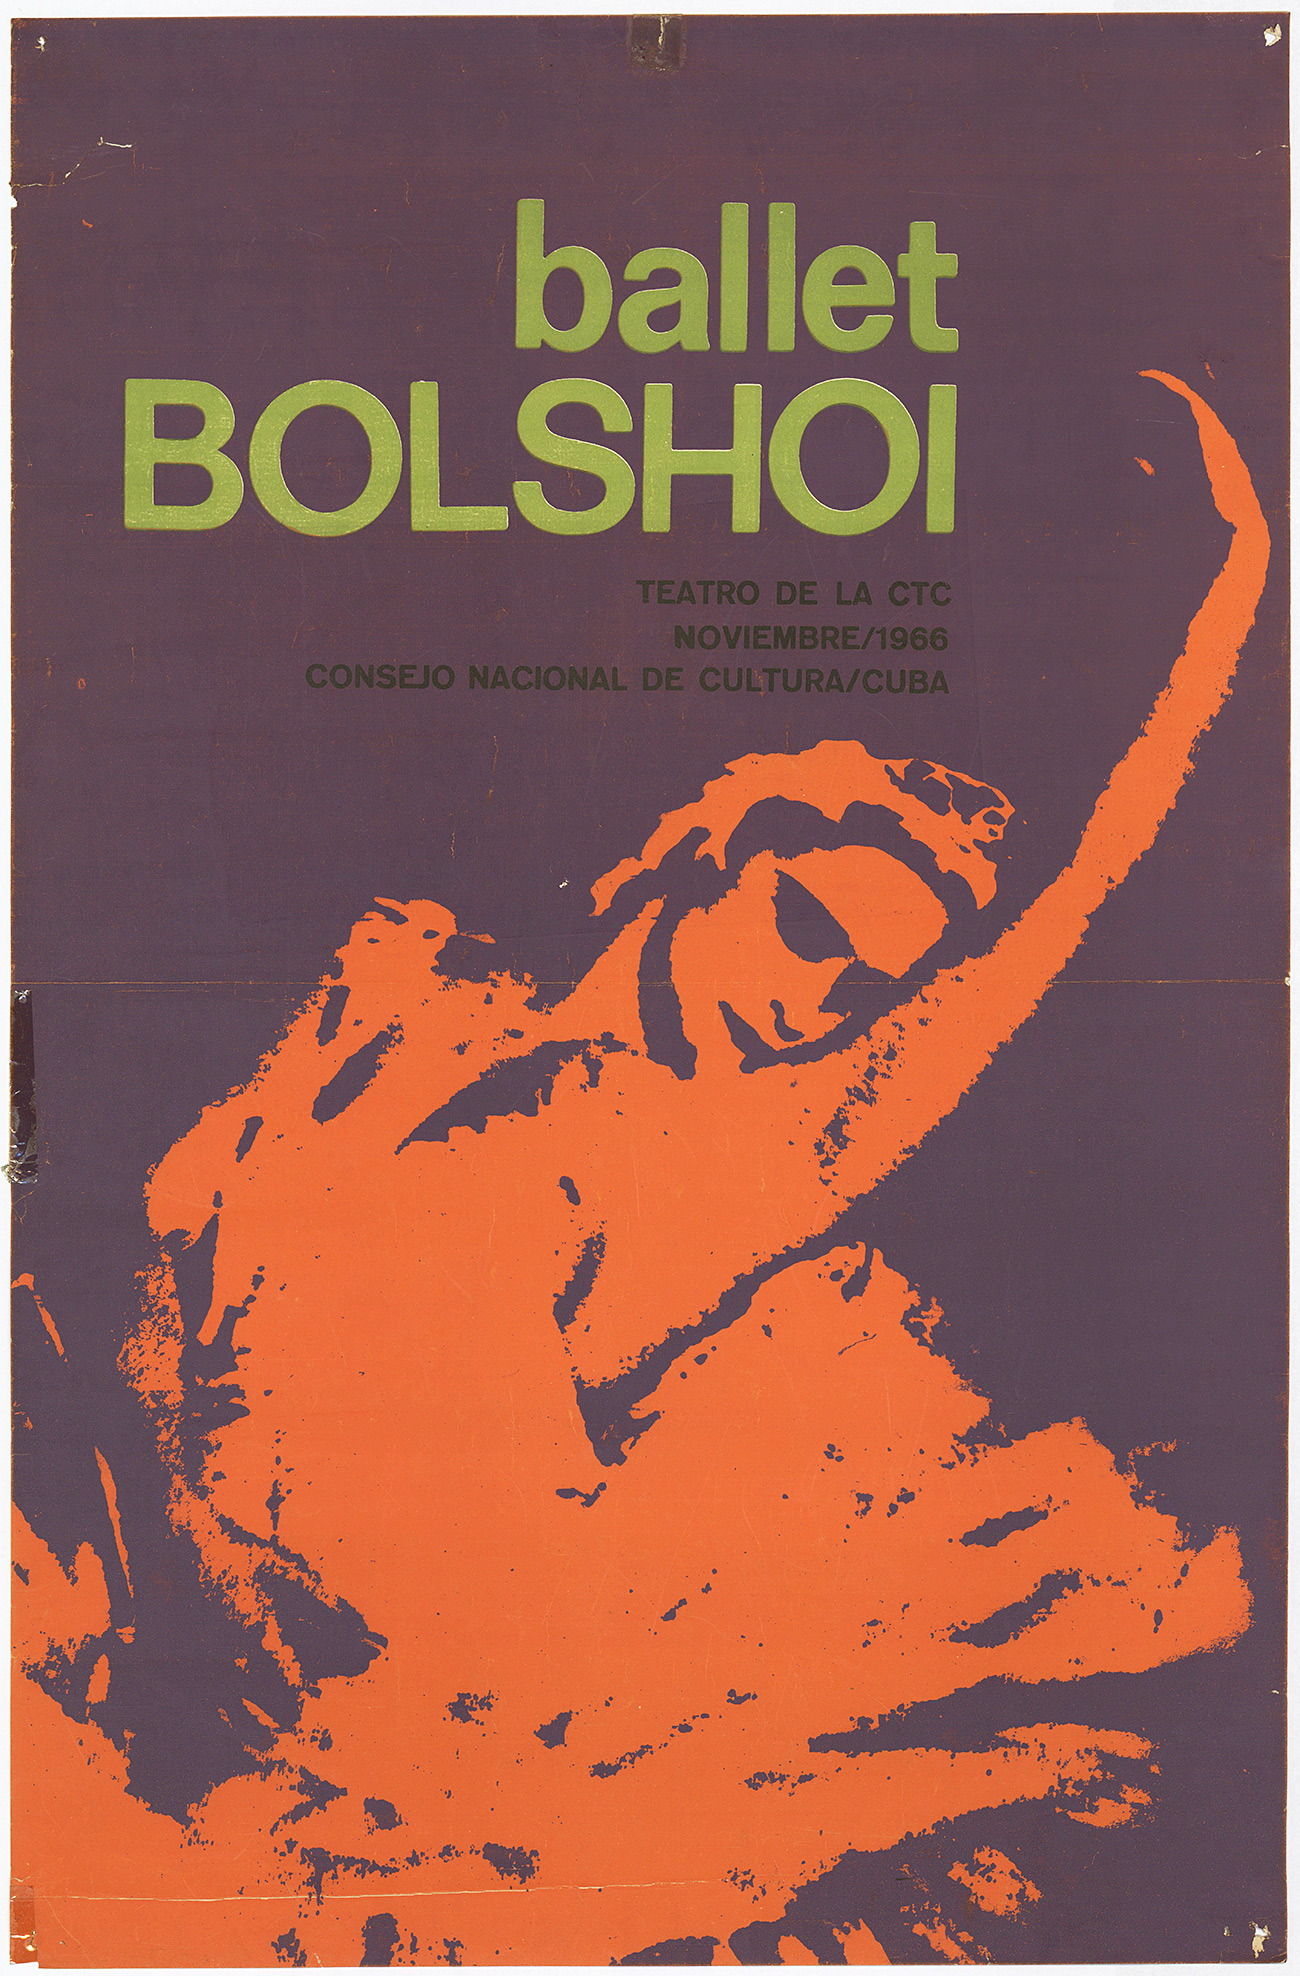 Photo: Bolshoi Theater, ABBYY